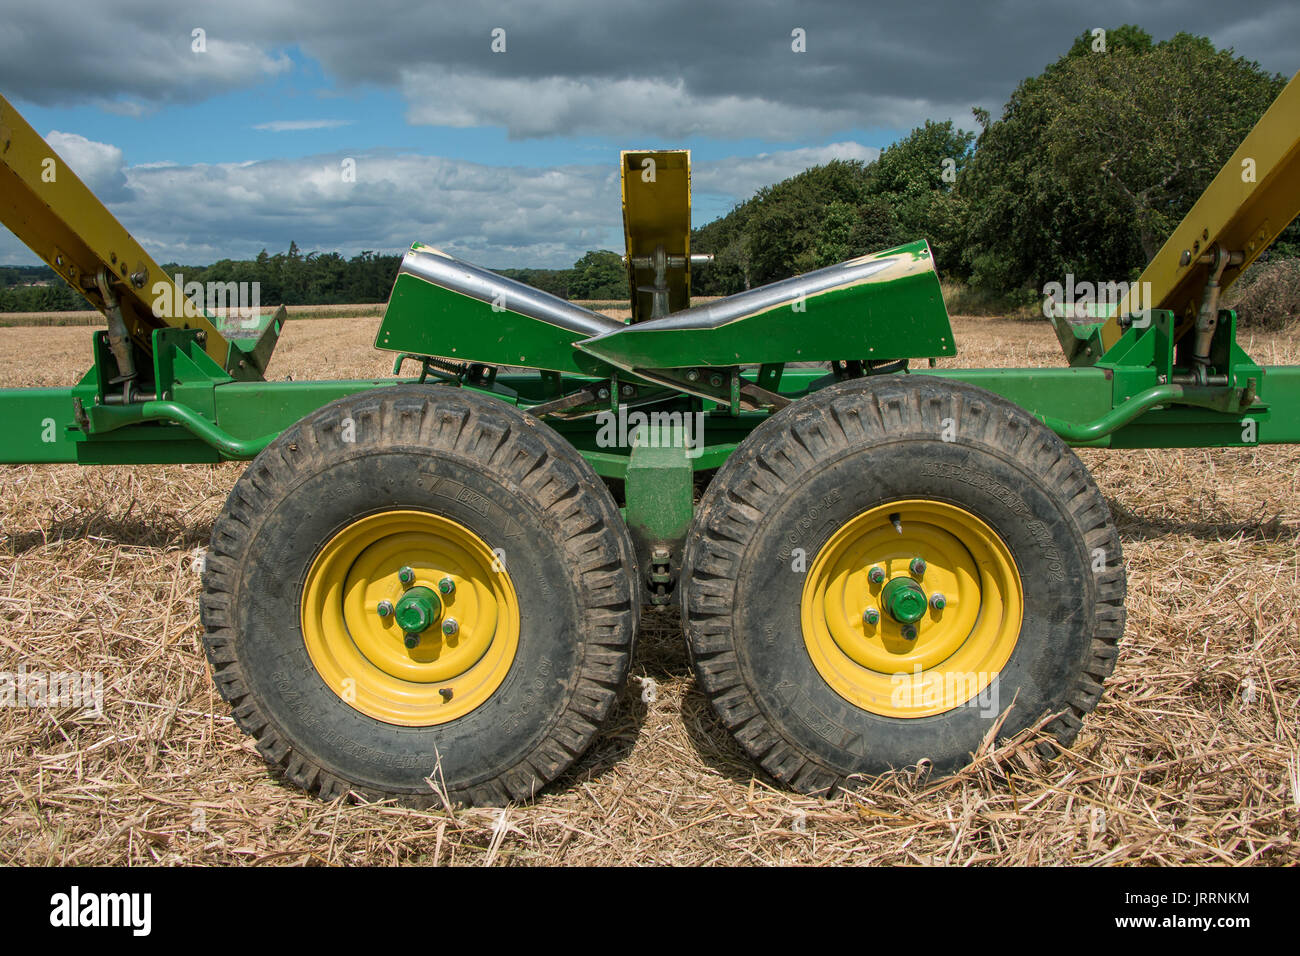 Les machines agricoles - vue rapprochée d'une partie d'une moissonneuse-batteuse John Deere remorque coupe Juillet 2017 Banque D'Images